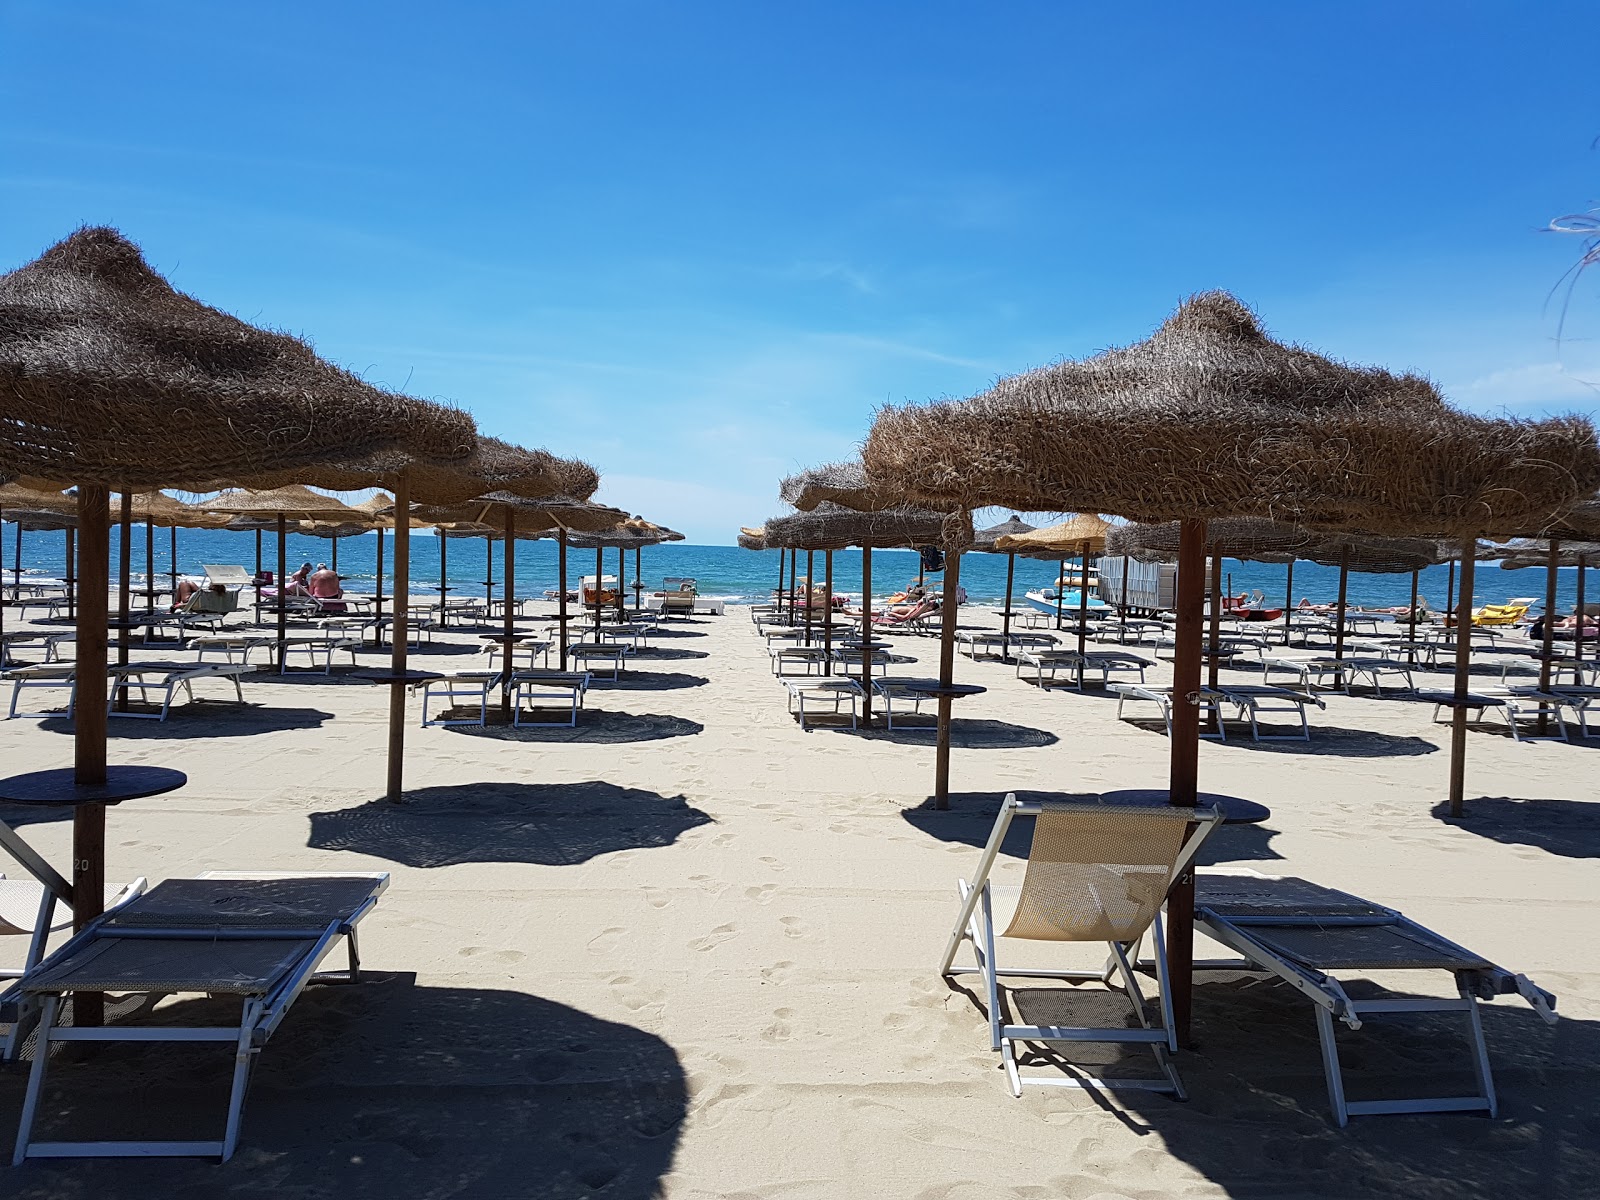 Foto von Spiaggia Libera Tirrenia - beliebter Ort unter Entspannungskennern